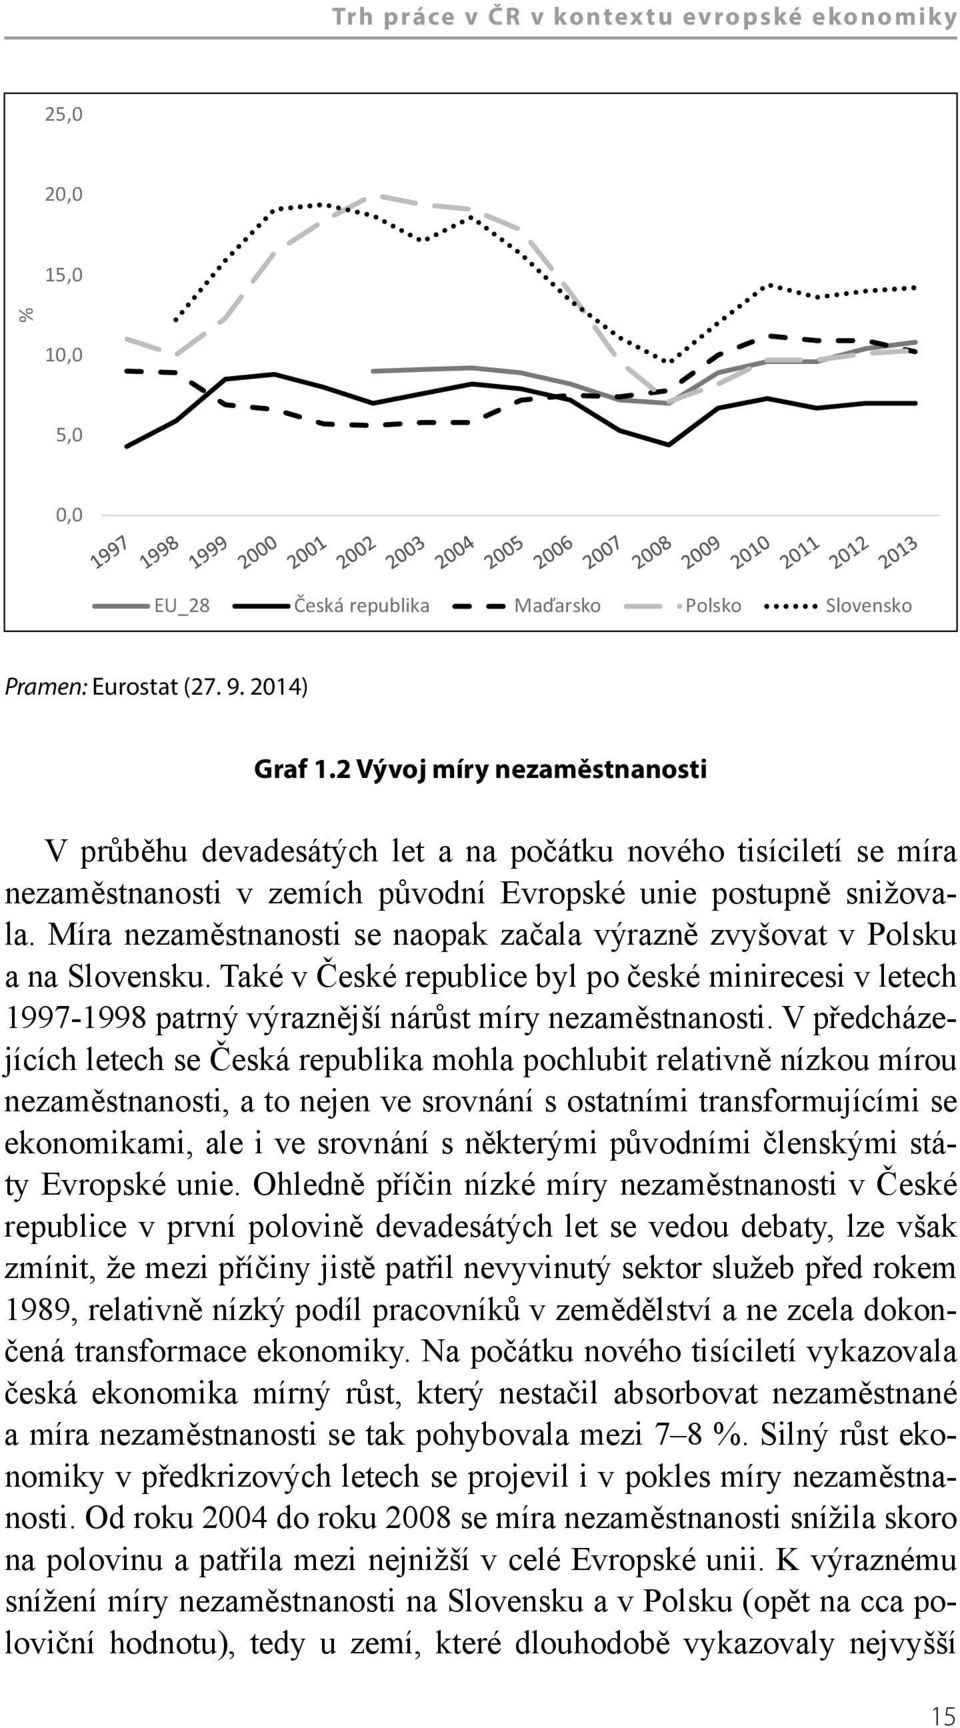 Míra nezaměstnanosti se naopak začala výrazně zvyšovat v Polsku a na Slovensku. Také v České republice byl po české minirecesi v letech 1997-1998 patrný výraznější nárůst míry nezaměstnanosti.